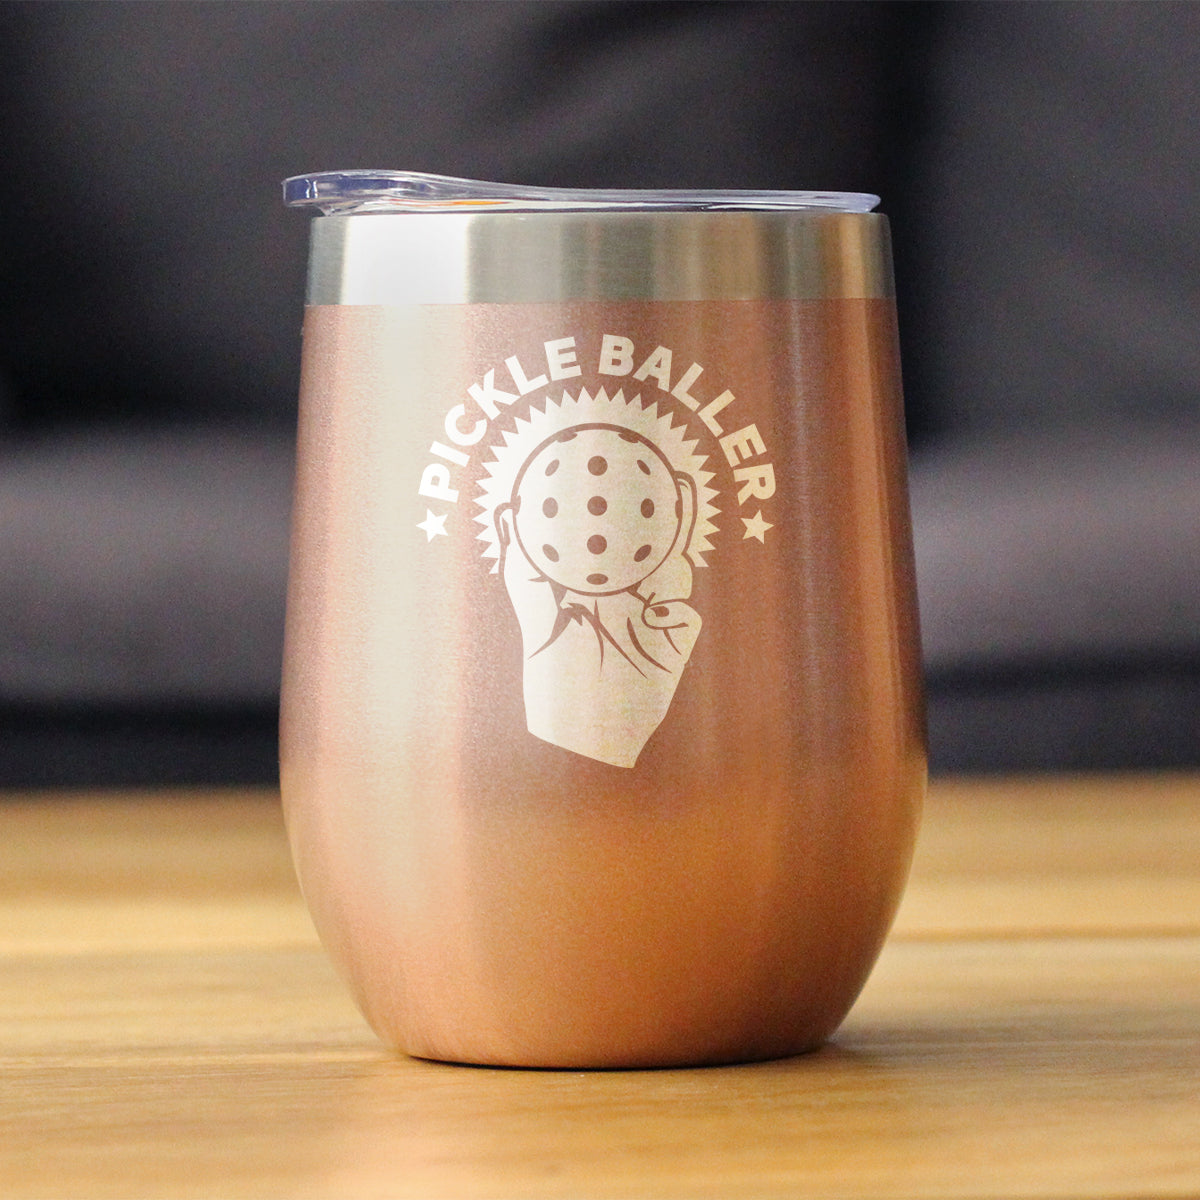 Pickleballer - Wine Tumbler Glass with Sliding Lid - Stainless Steel Travel Mug - Fun Pickleball Gifts for Women and Men